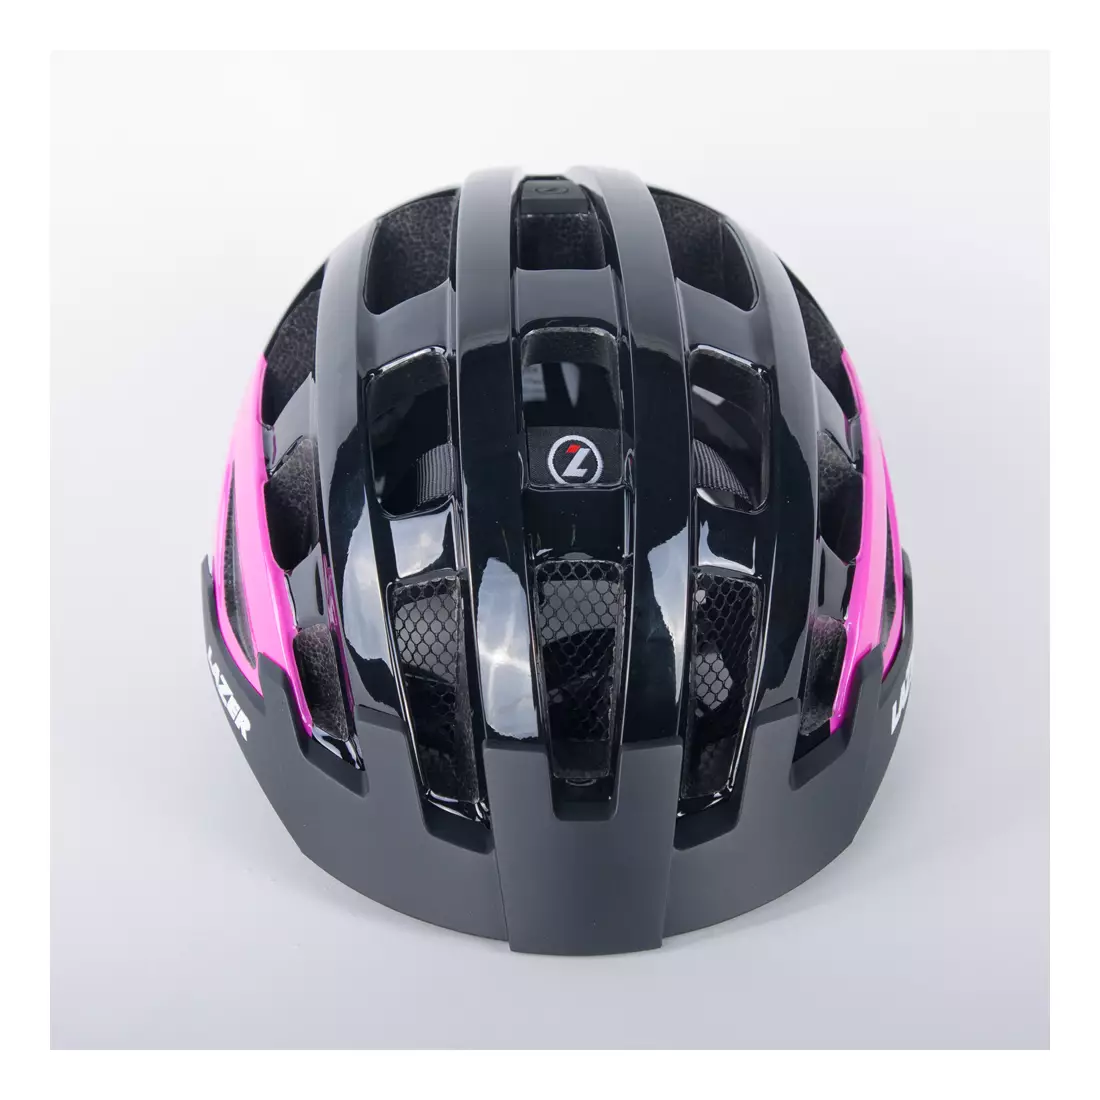 Dámská cyklistická helma LAZER Petit DLX Mesh + LED černá a růžová